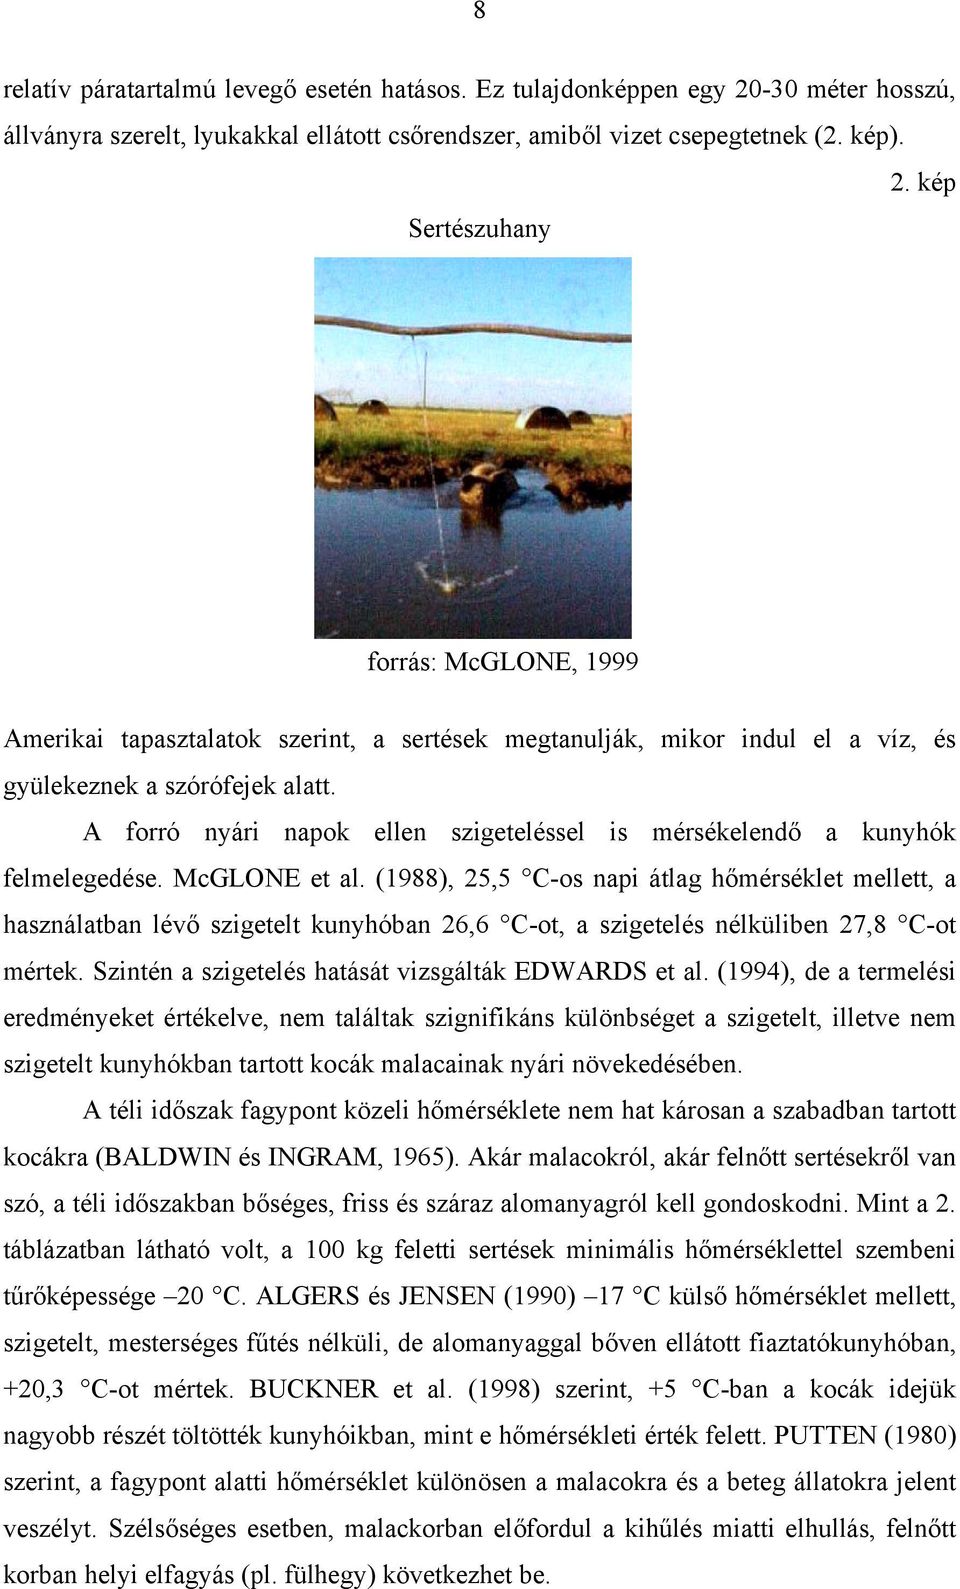 kép Sertészuhany forrás: McGLONE, 1999 Amerikai tapasztalatok szerint, a sertések megtanulják, mikor indul el a víz, és gyülekeznek a szórófejek alatt.